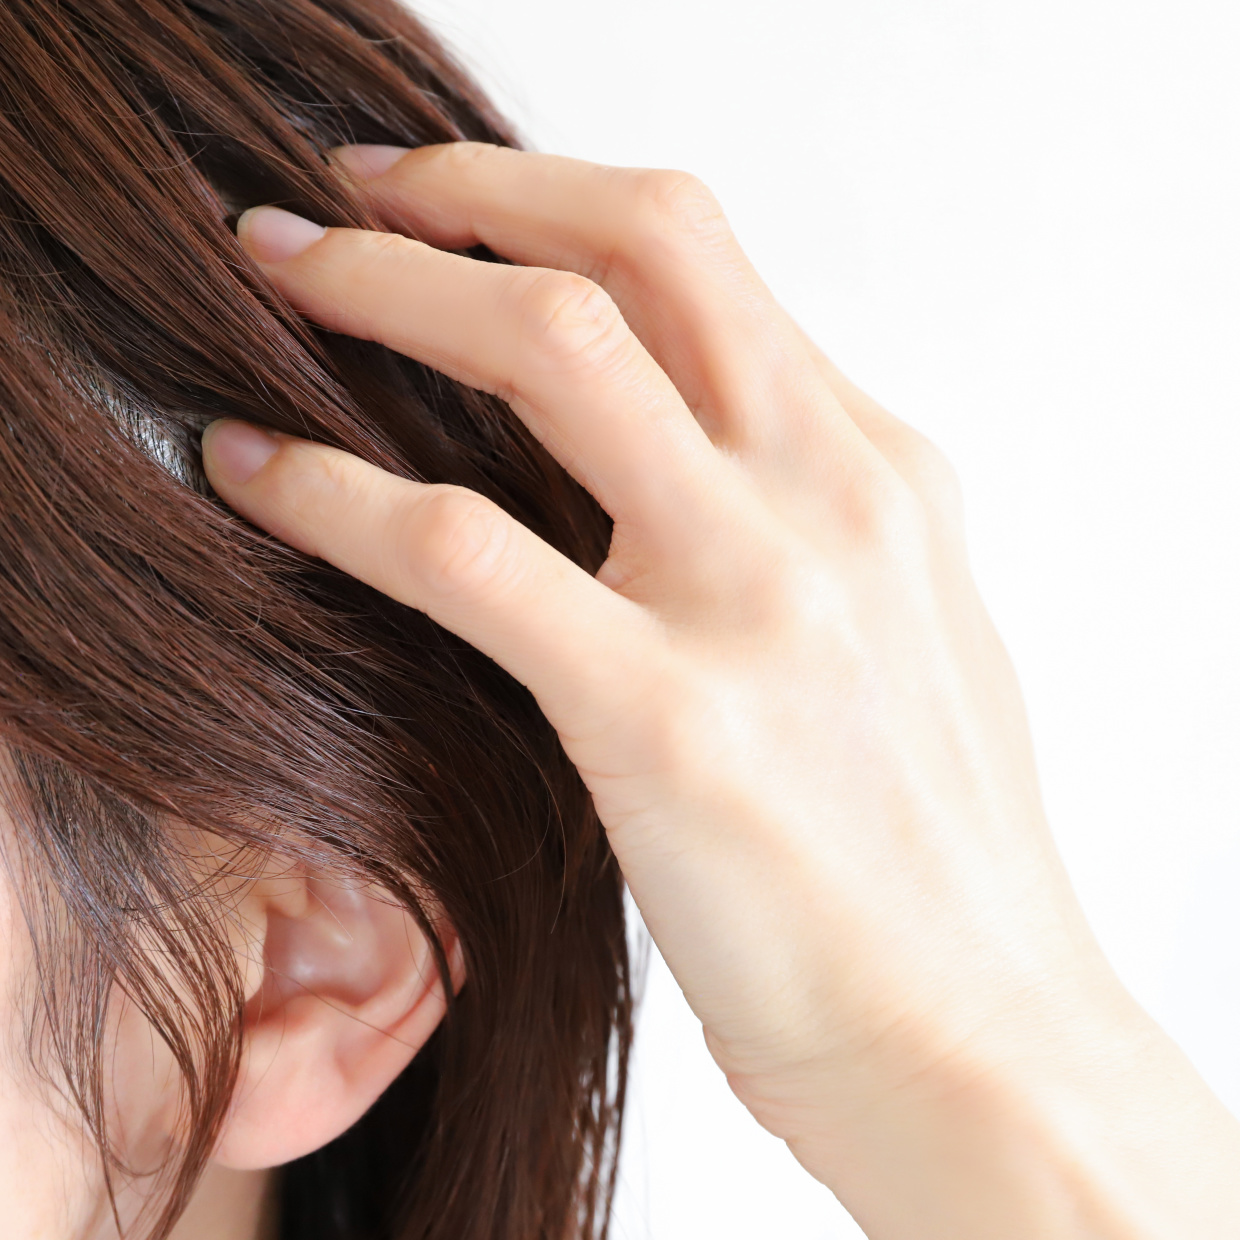  40代から女性の髪悩みは増える。髪の老化が進む“2つの大きな原因”とは#髪のプロに聞く 